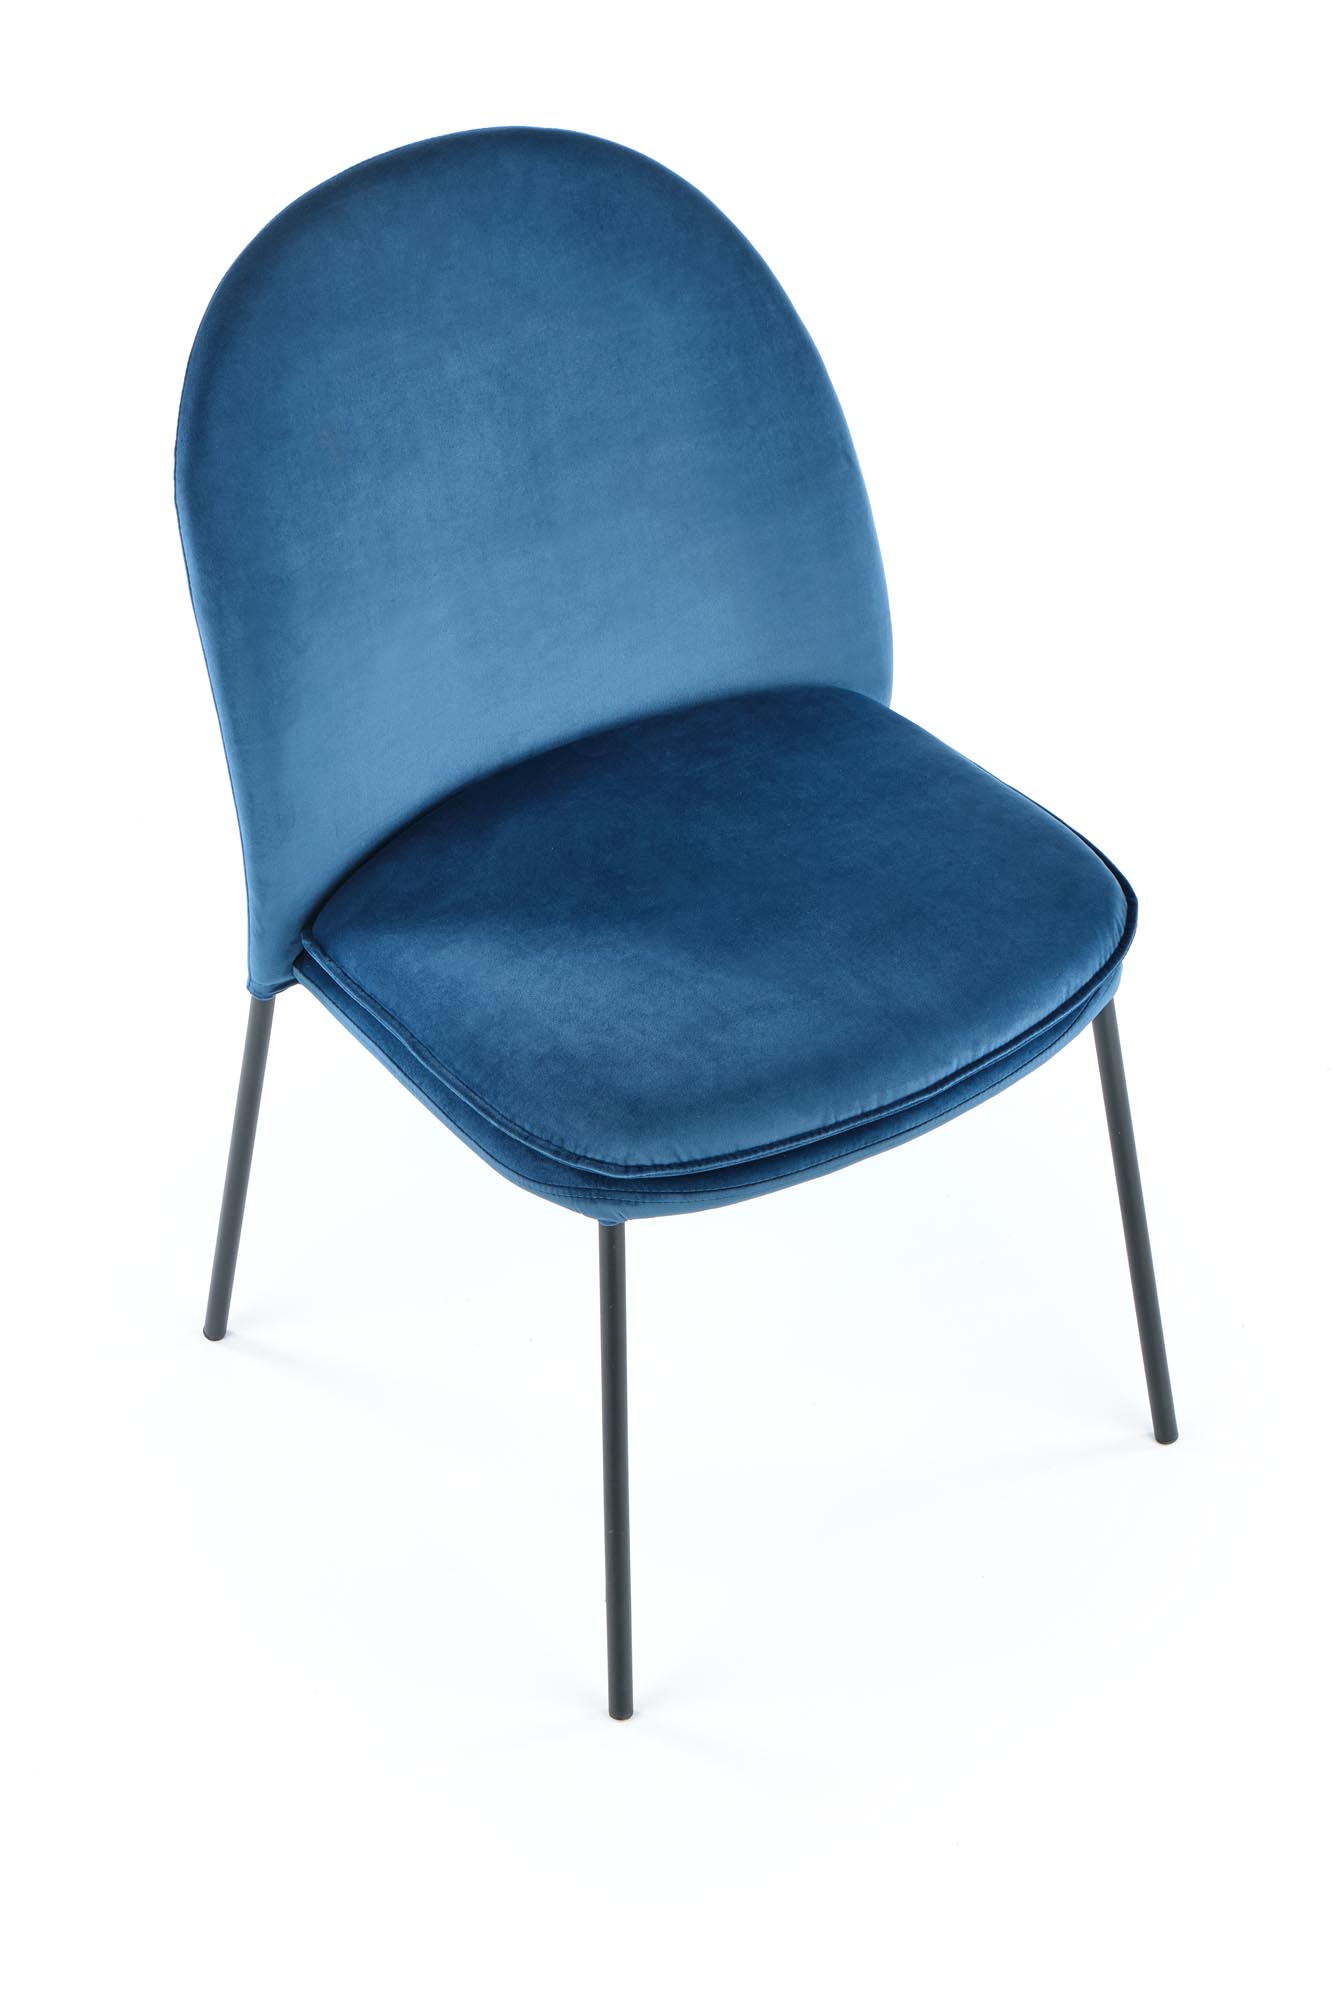 K443 szék - sötétkék k443 Židle tmavě modrá